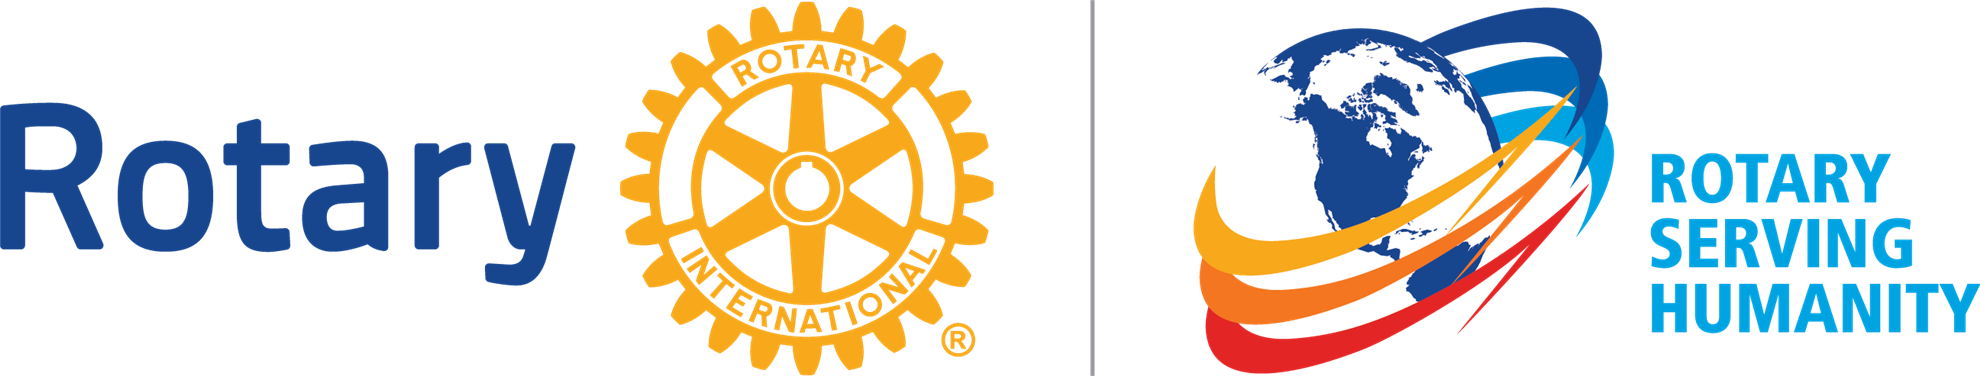 Rotary International Logo Clip Art – Cliparts